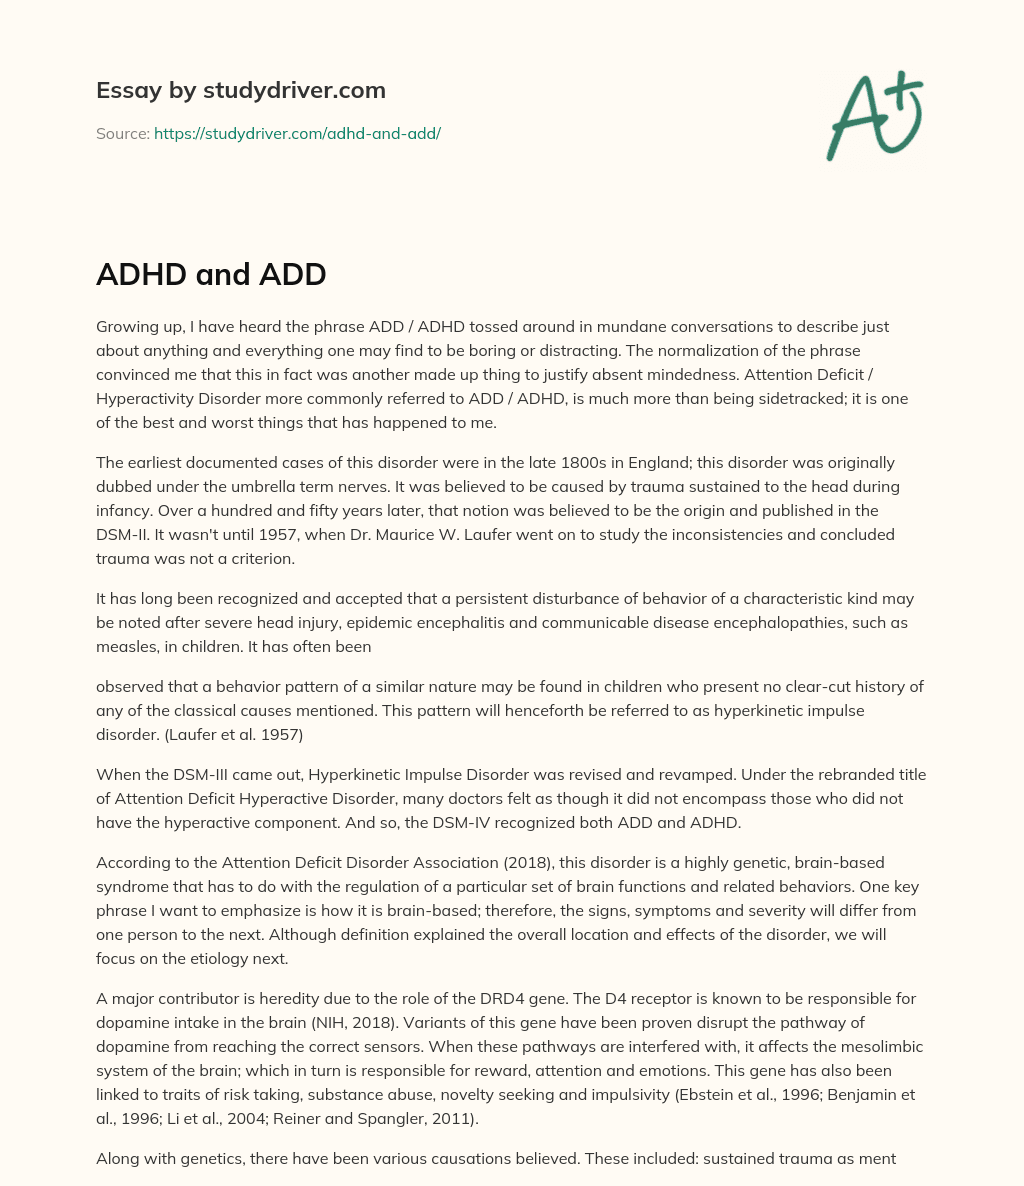 ADHD and ADD essay